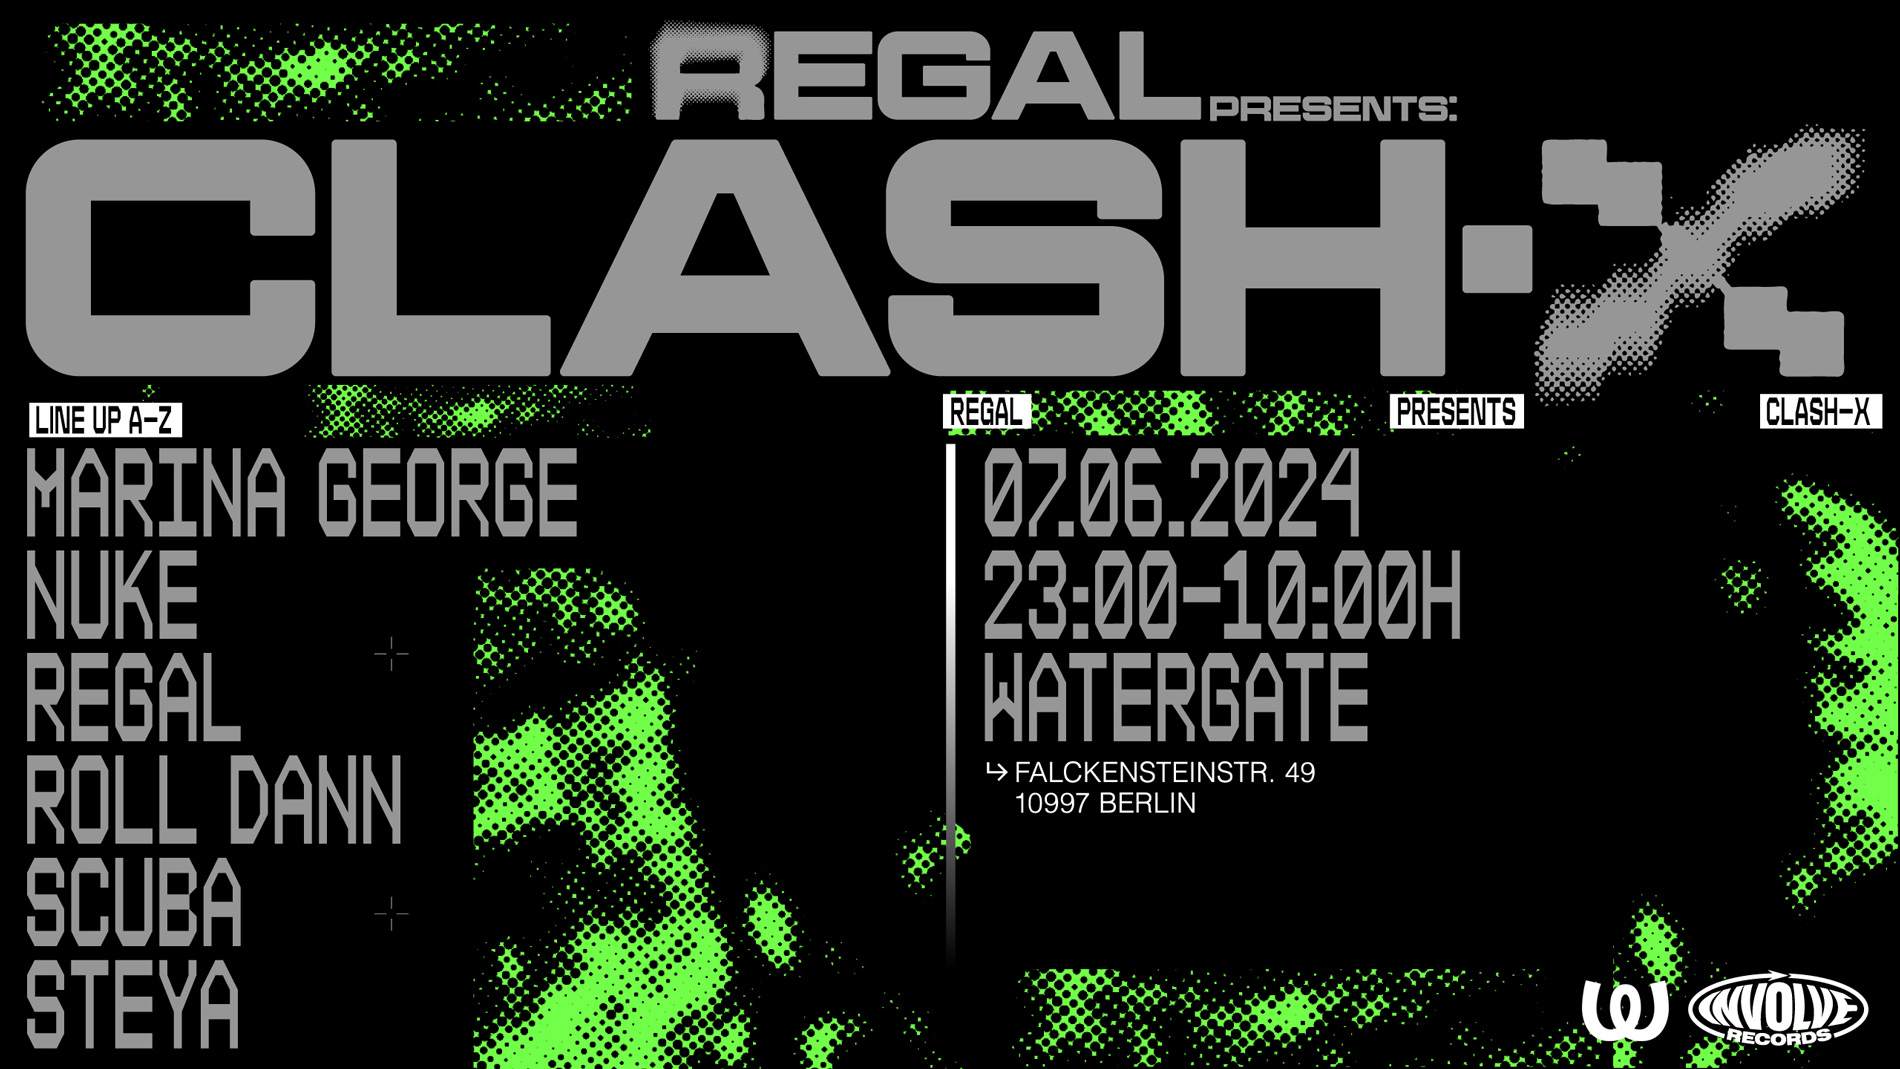 Regal presents Clash-X - Página frontal